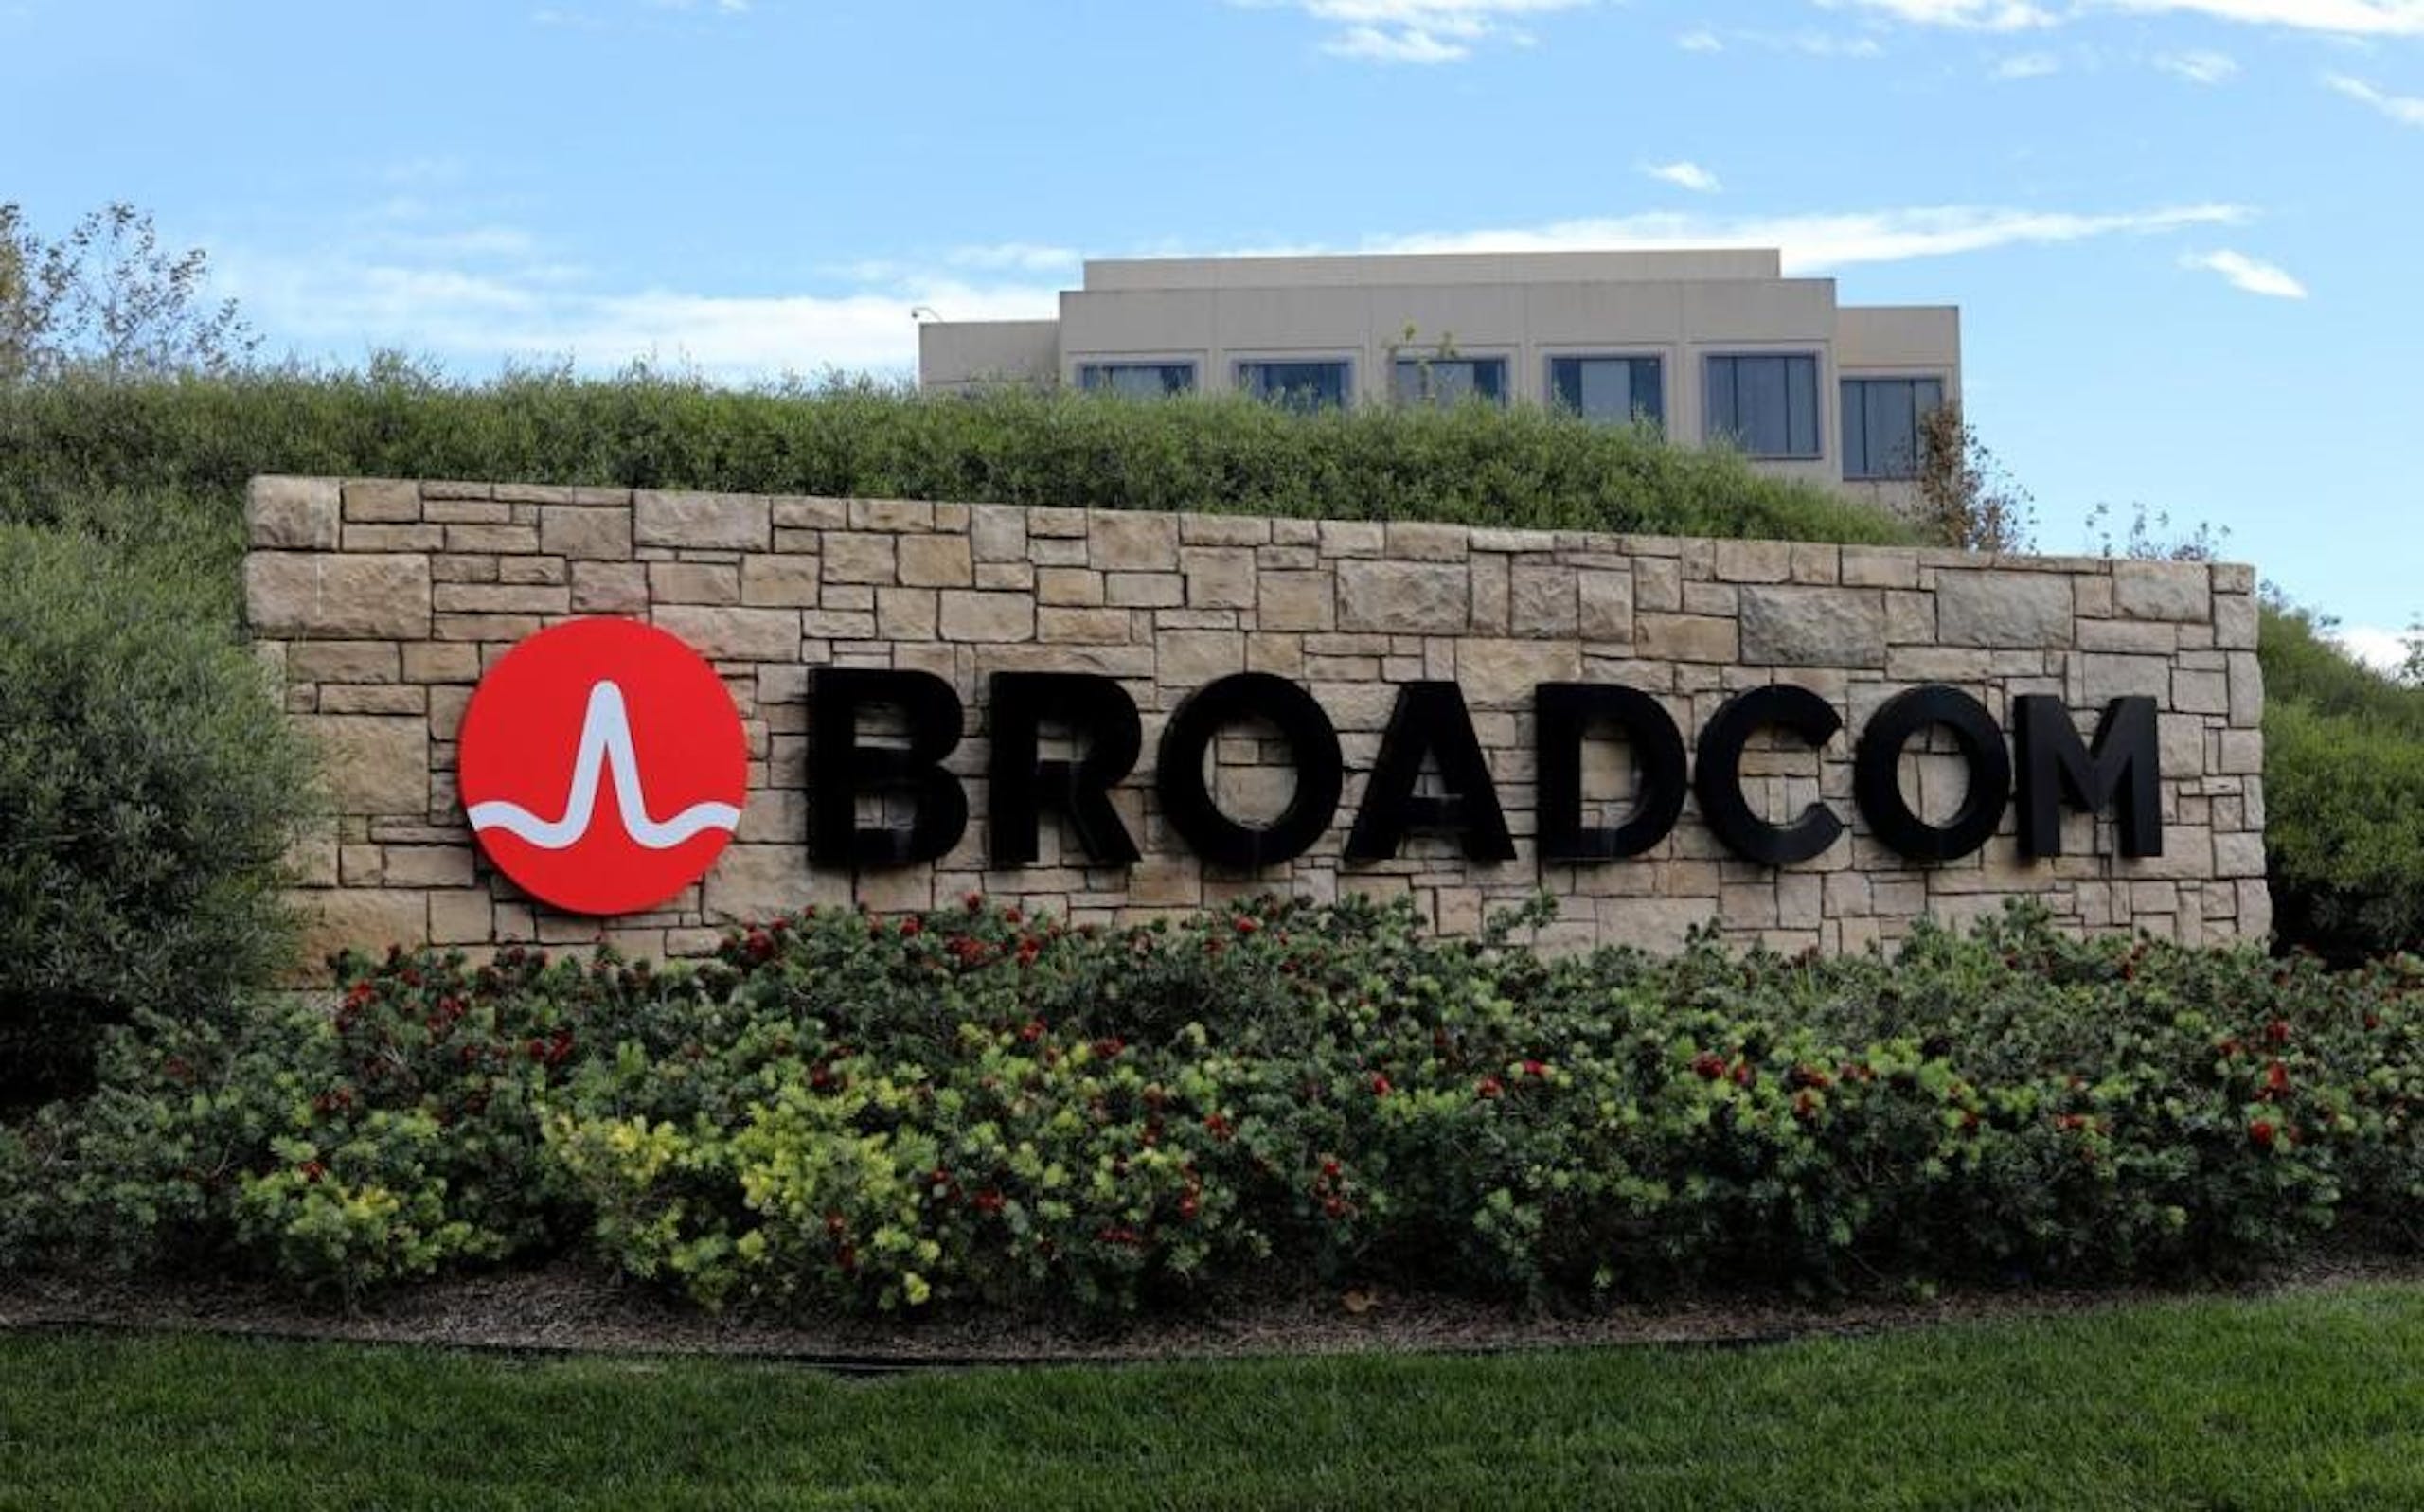 照片中提到了BROADCOM，跟博通公司有關，包含了博通科技公司辦公室高清、博通公司、博通公司、的VMware、加泰科技